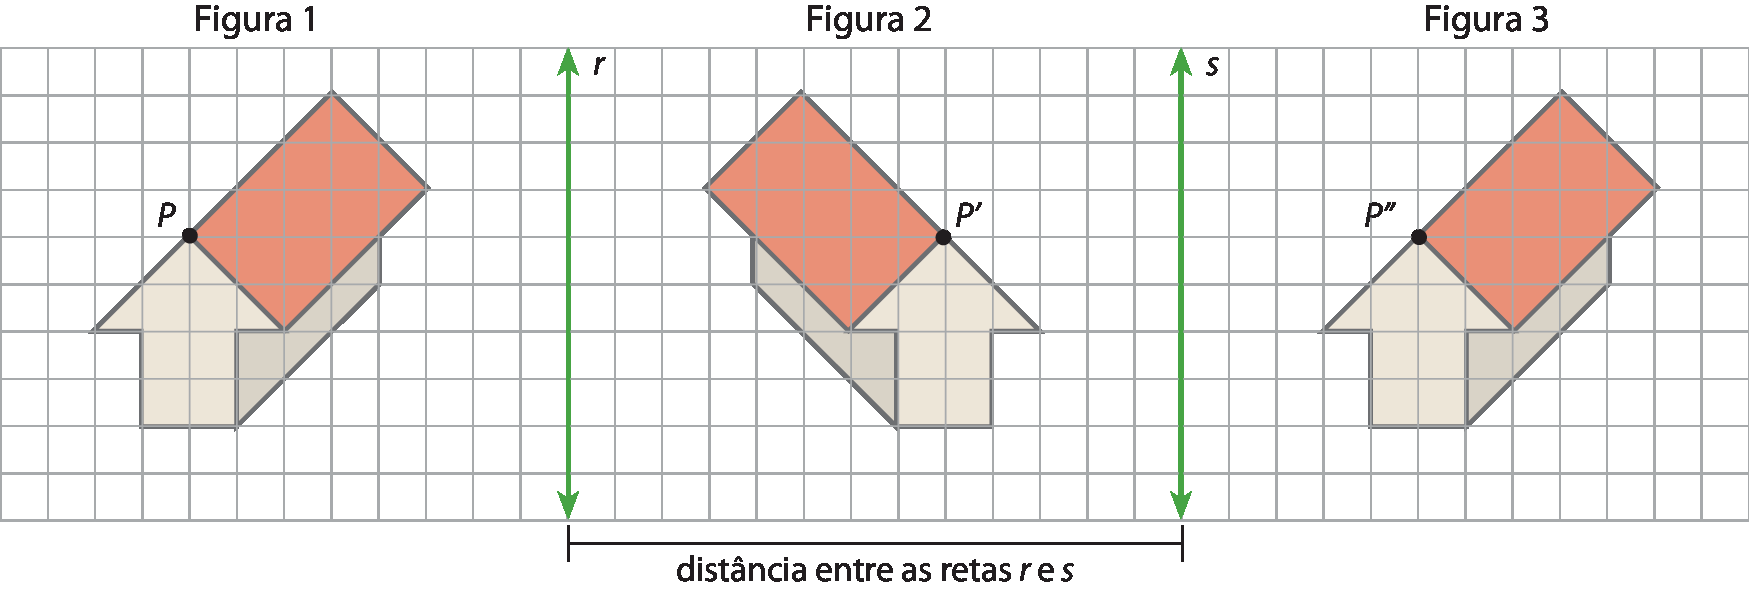 Ilustração. Malha quadriculada. Da direita para a esquerda, figura 1, reta r, figura 2, reta s e figura 3. Figura 1. Vista de casa na diagonal para esquerda com ponto P no topo do telhado. Reta vertical r. Figura 2. Vista de casa na diagonal para direita com ponto P linha no topo do telhado. Reta vertical s. Figura 3. Vista de casa na diagonal para esquerda com ponto P duas linhas no topo do telhado. A distância entre as retas e e s é de 13 quadradinhos.